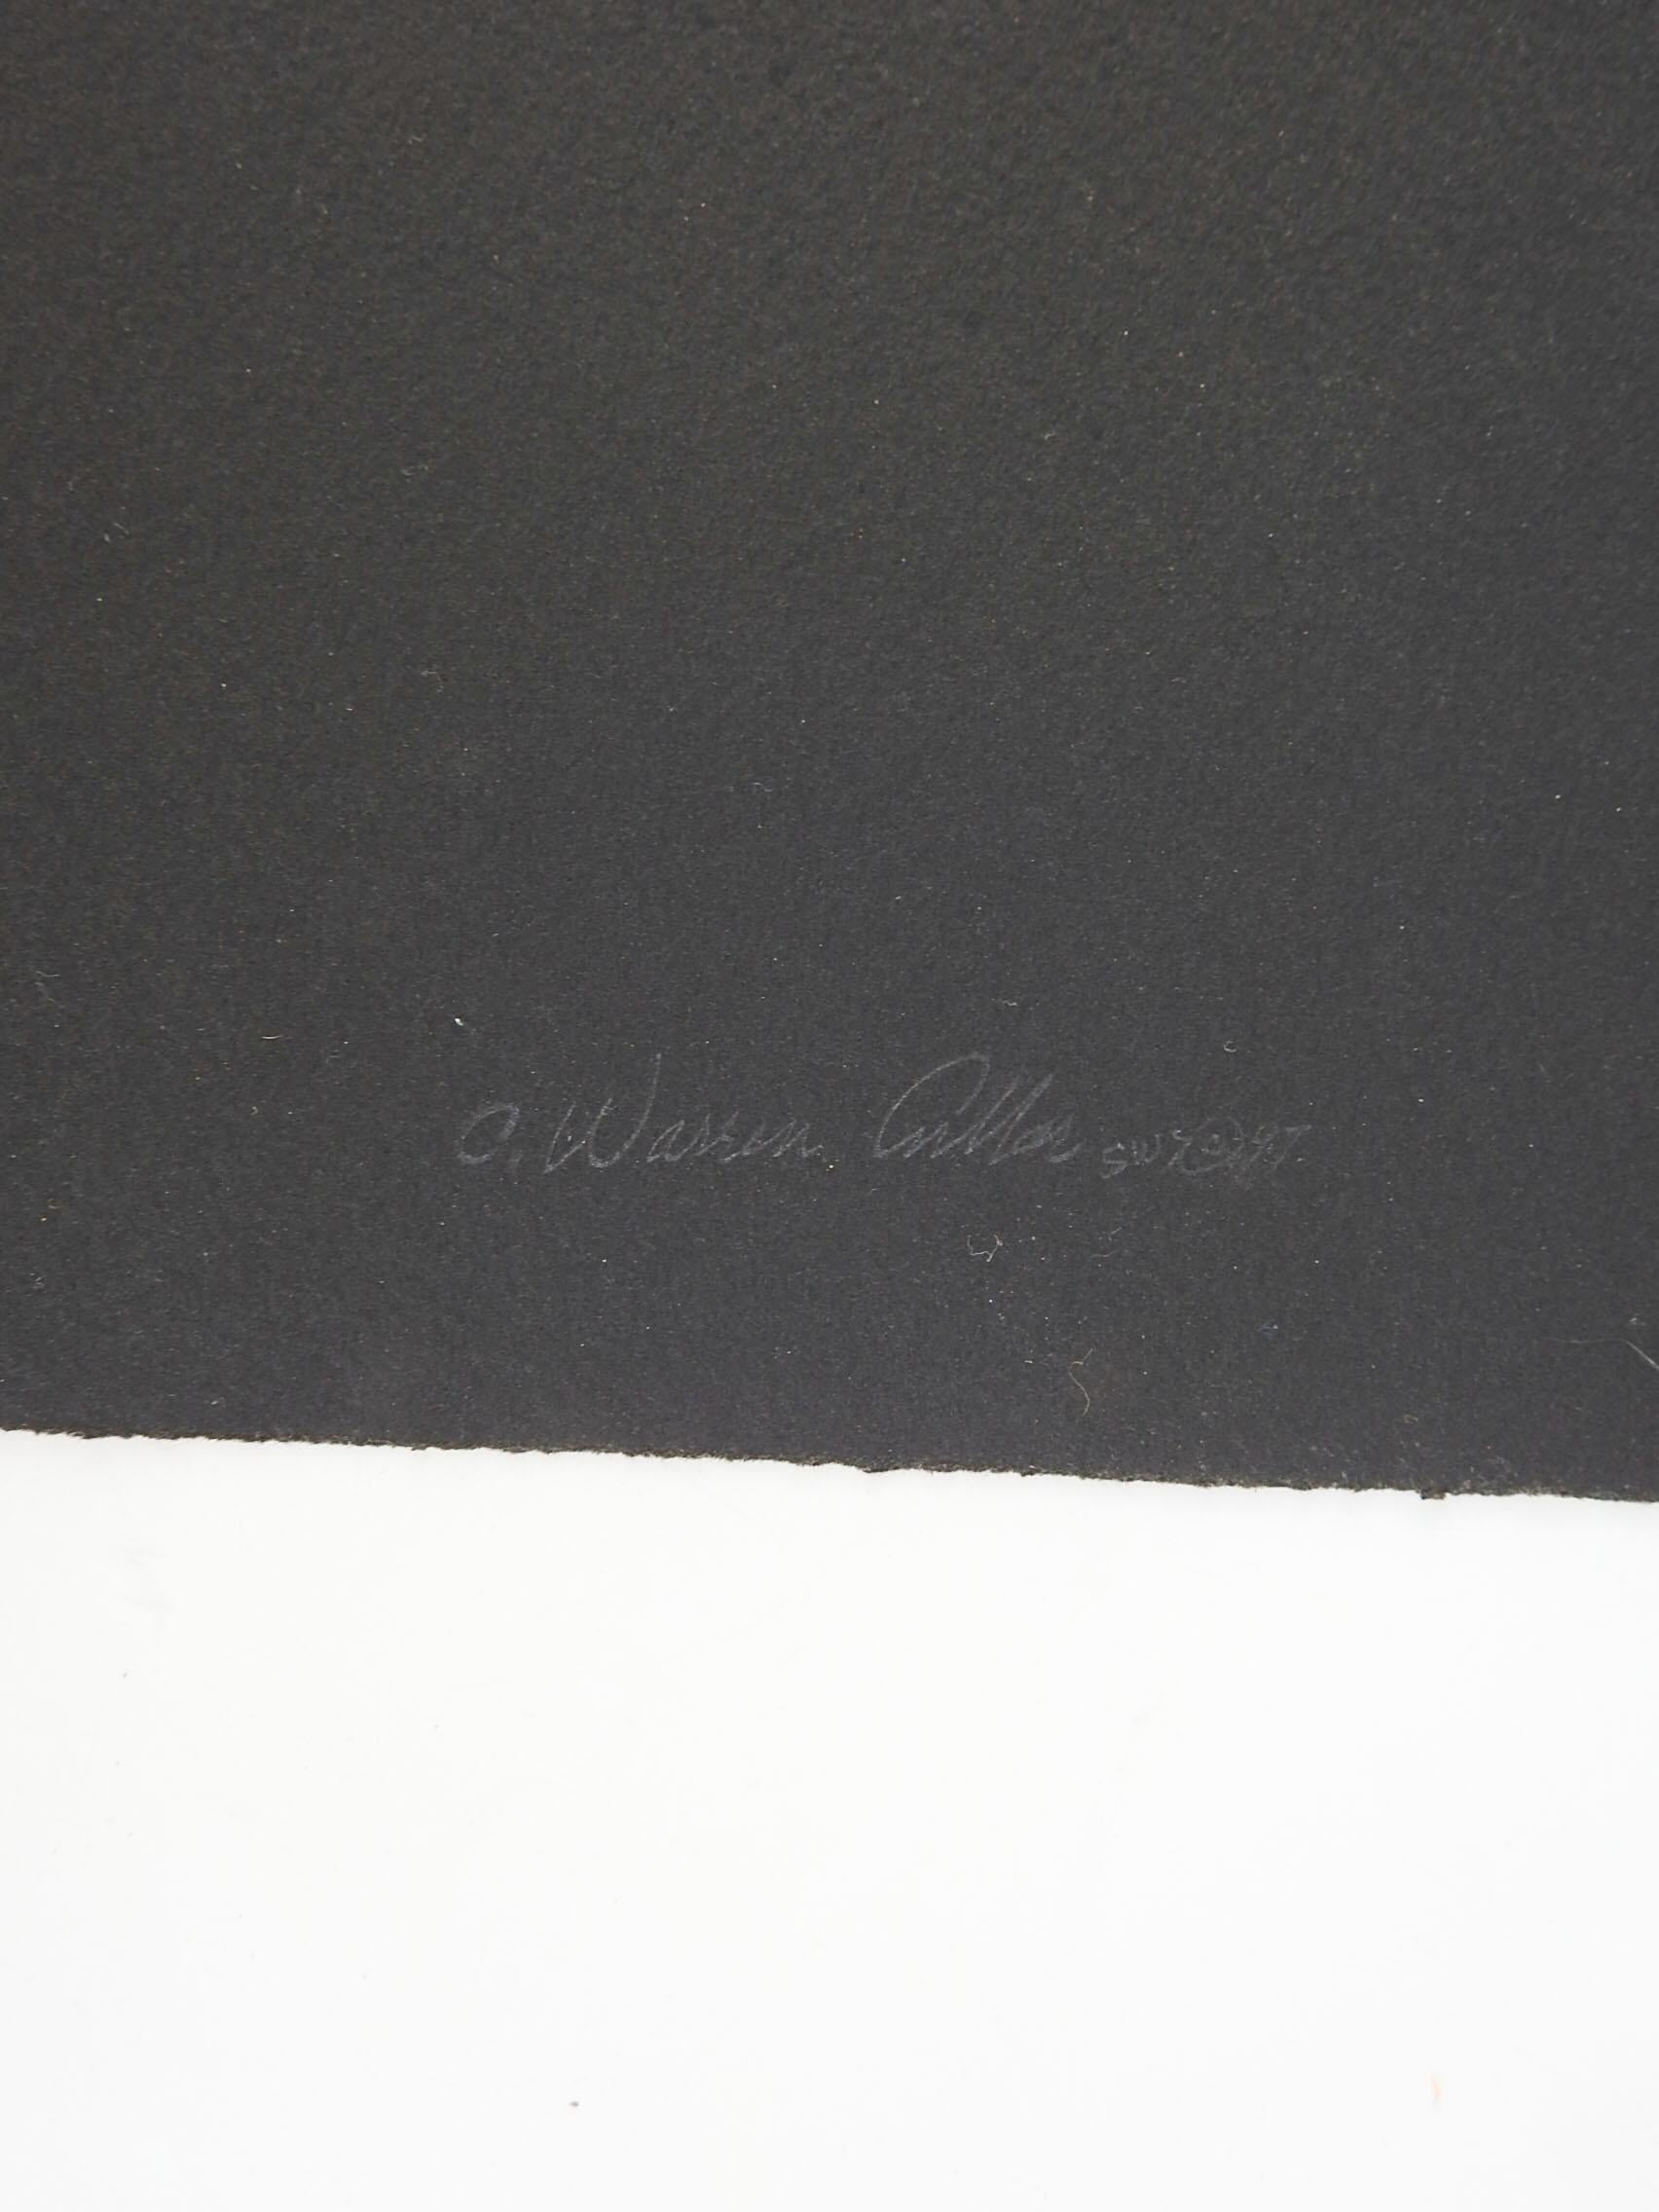 1997 Serigrafie auf schwarzem Papier eines weiblichen Aktes von Warren Cullar (20.-21. Jahrhundert) Texas. Ombre-Effekt in Blau, Türkis und Lila mit Blattgoldakzenten, handgezeichnete Hintergrundmotive. Signiert und datiert in der rechten unteren